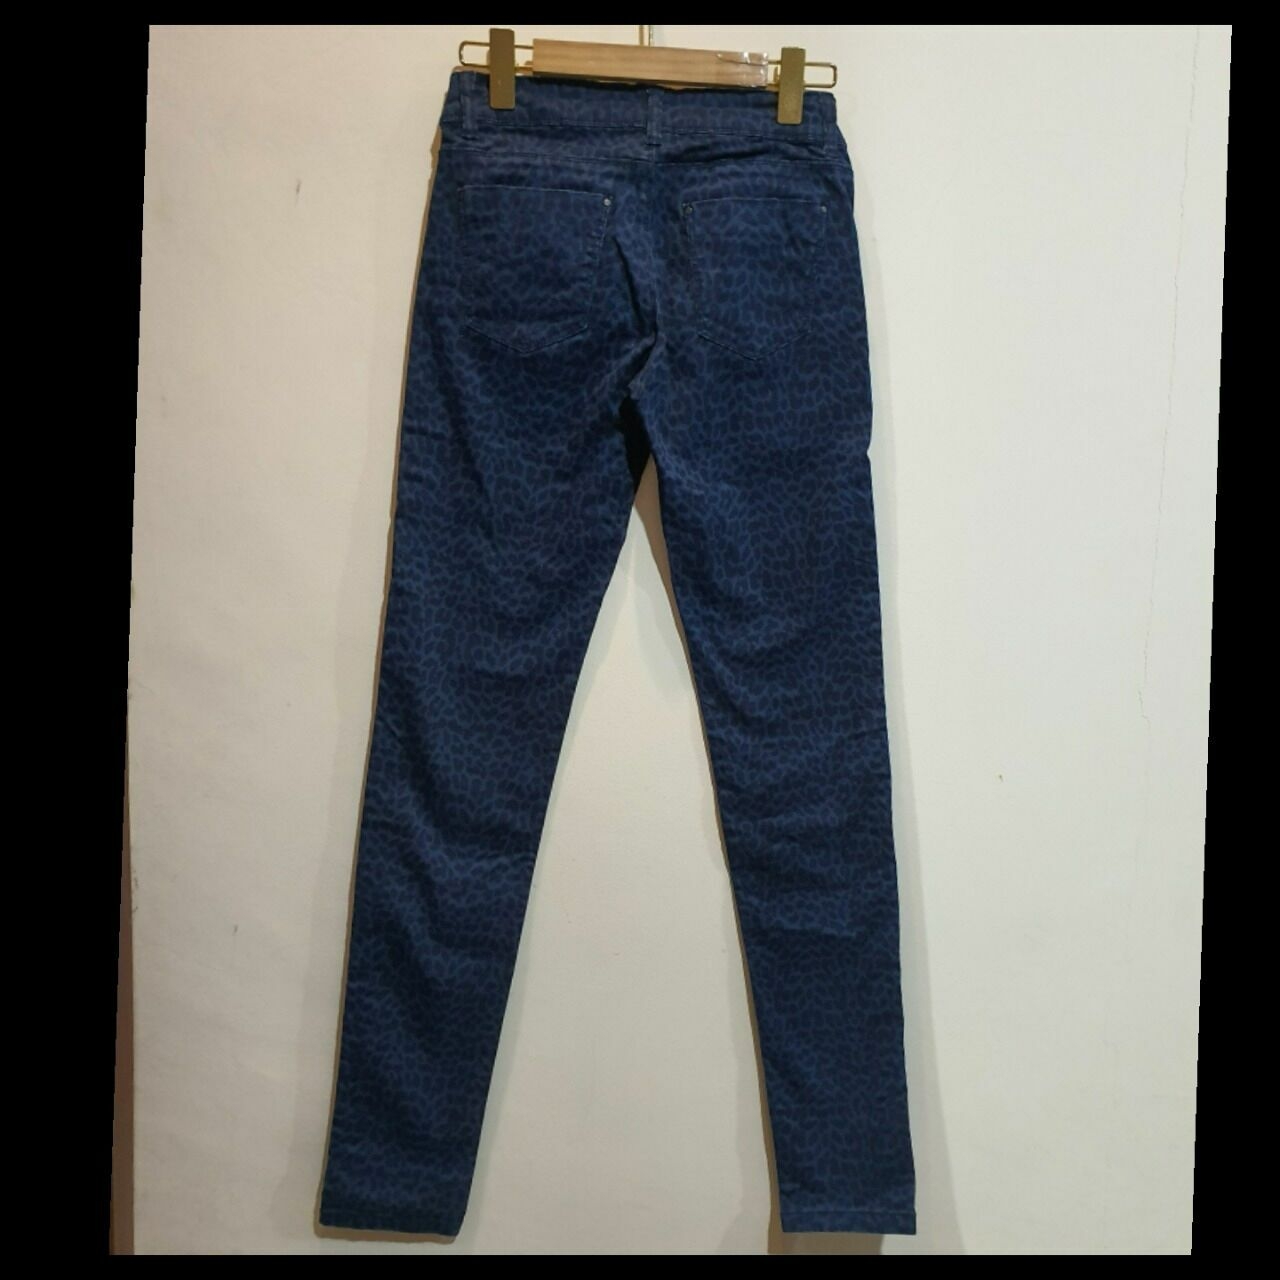 Promod Blue & Navy Celana Panjang Jeans